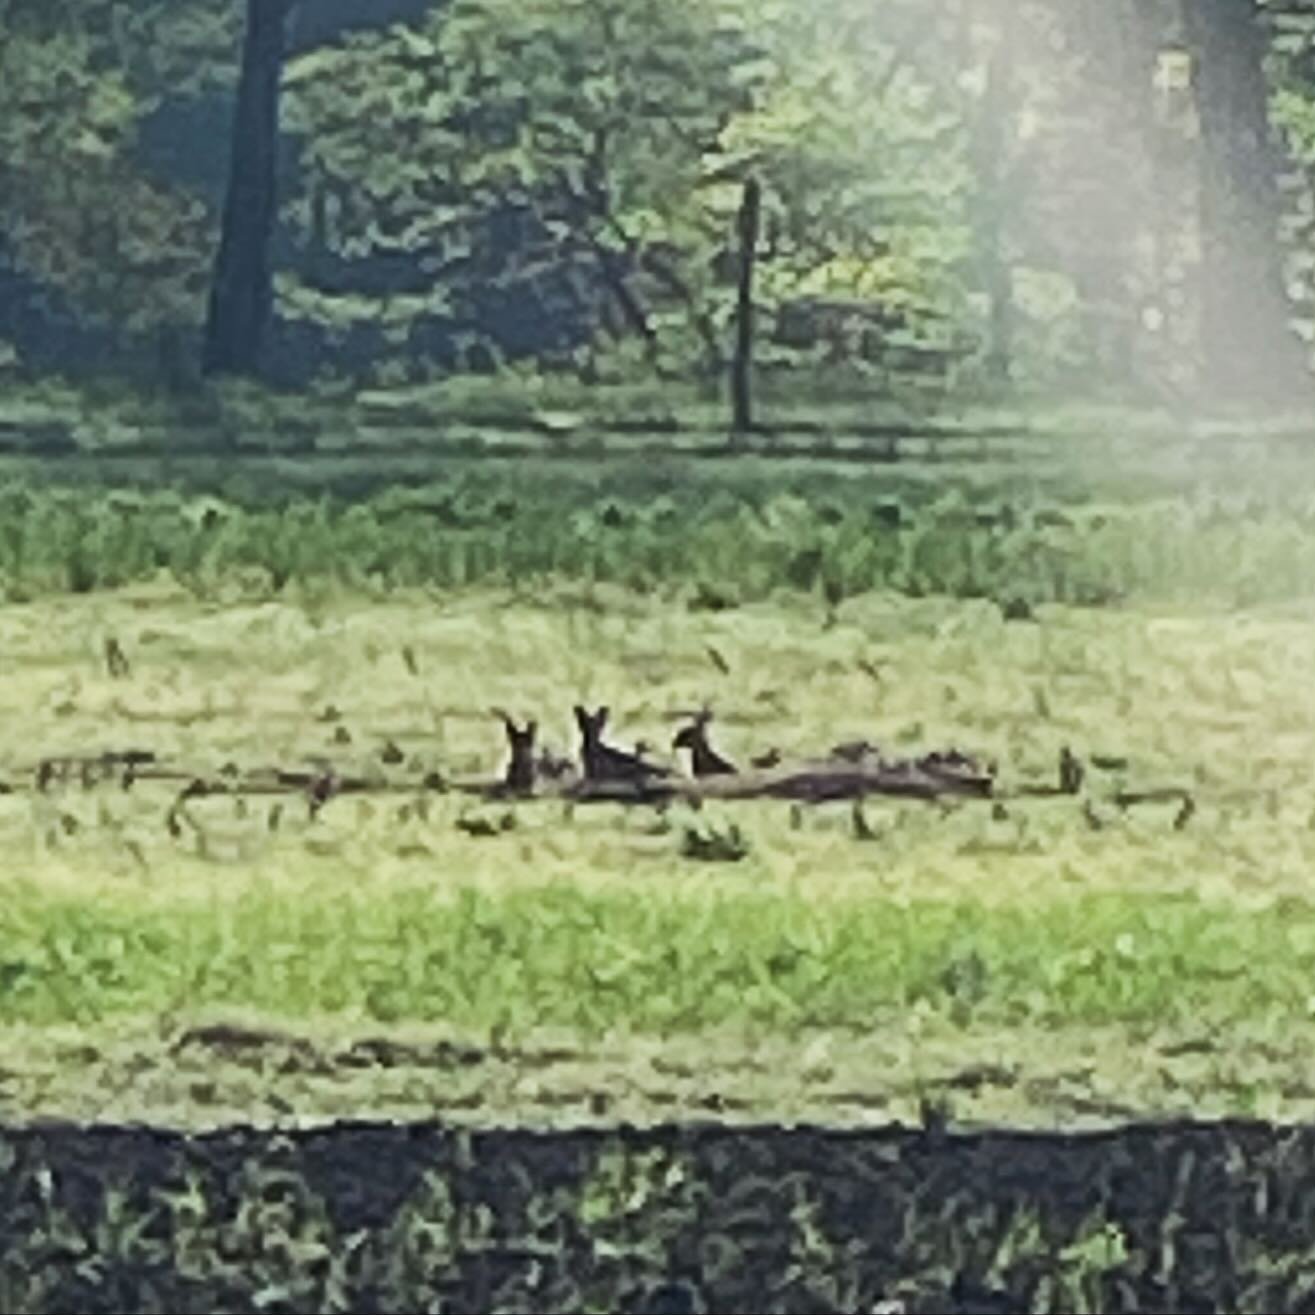 3 Fox babies in last year's kale field @willowwisporganicfarm